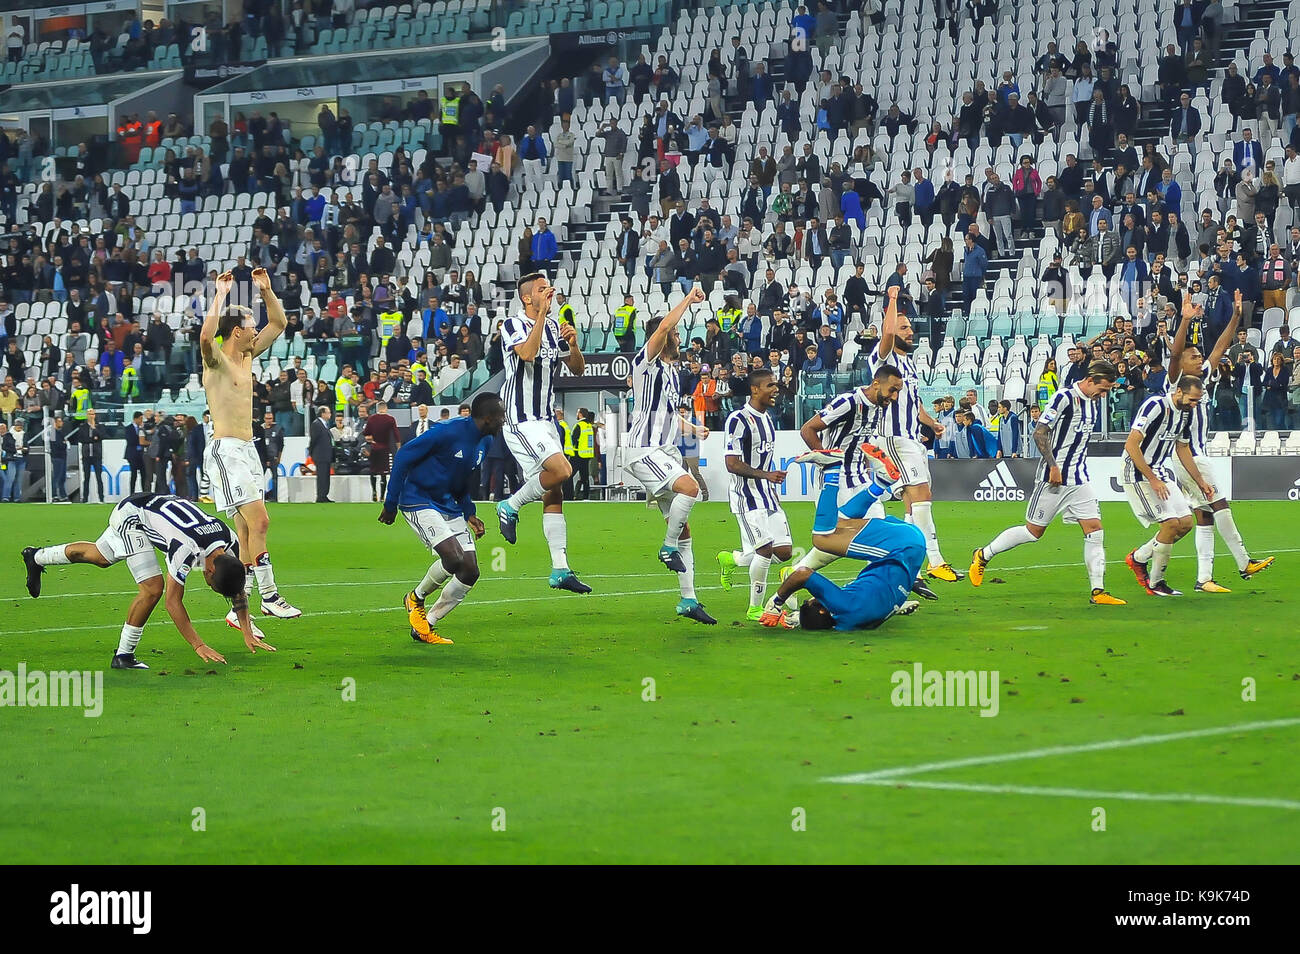 Au cours de la série d'un match de football entre la Juventus Turin et au fc stade Allianz le 23 septembre 2017 à Turin, Italie. Banque D'Images